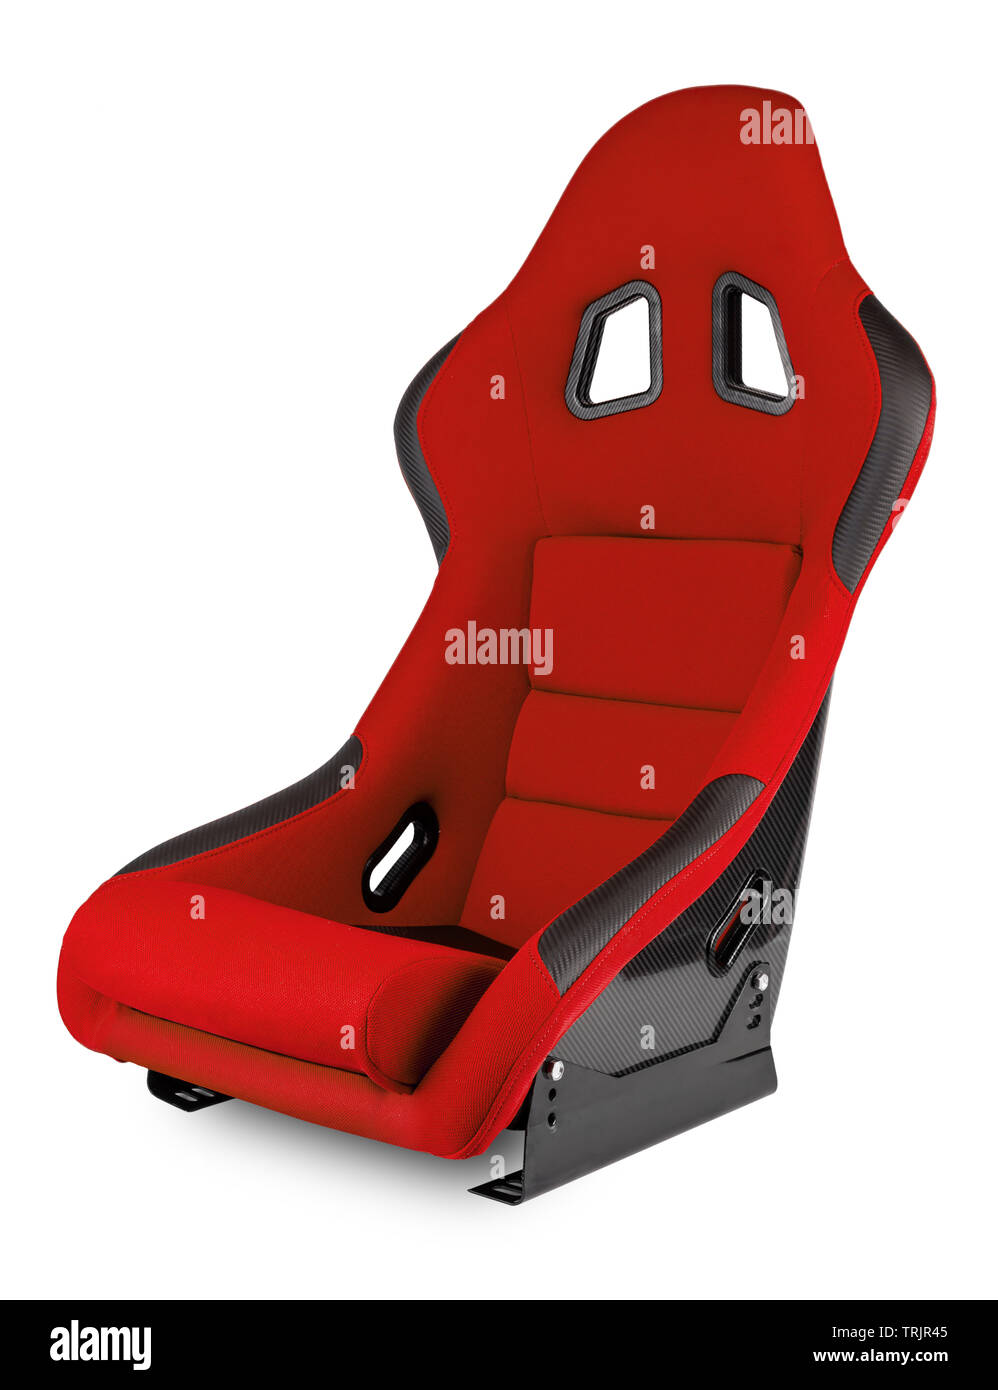 Rot Schwarz Carbon race car Schalensitz auf weißem Hintergrund. Motorsport,  Sim-Racing und Tuning Konzept Stockfotografie - Alamy